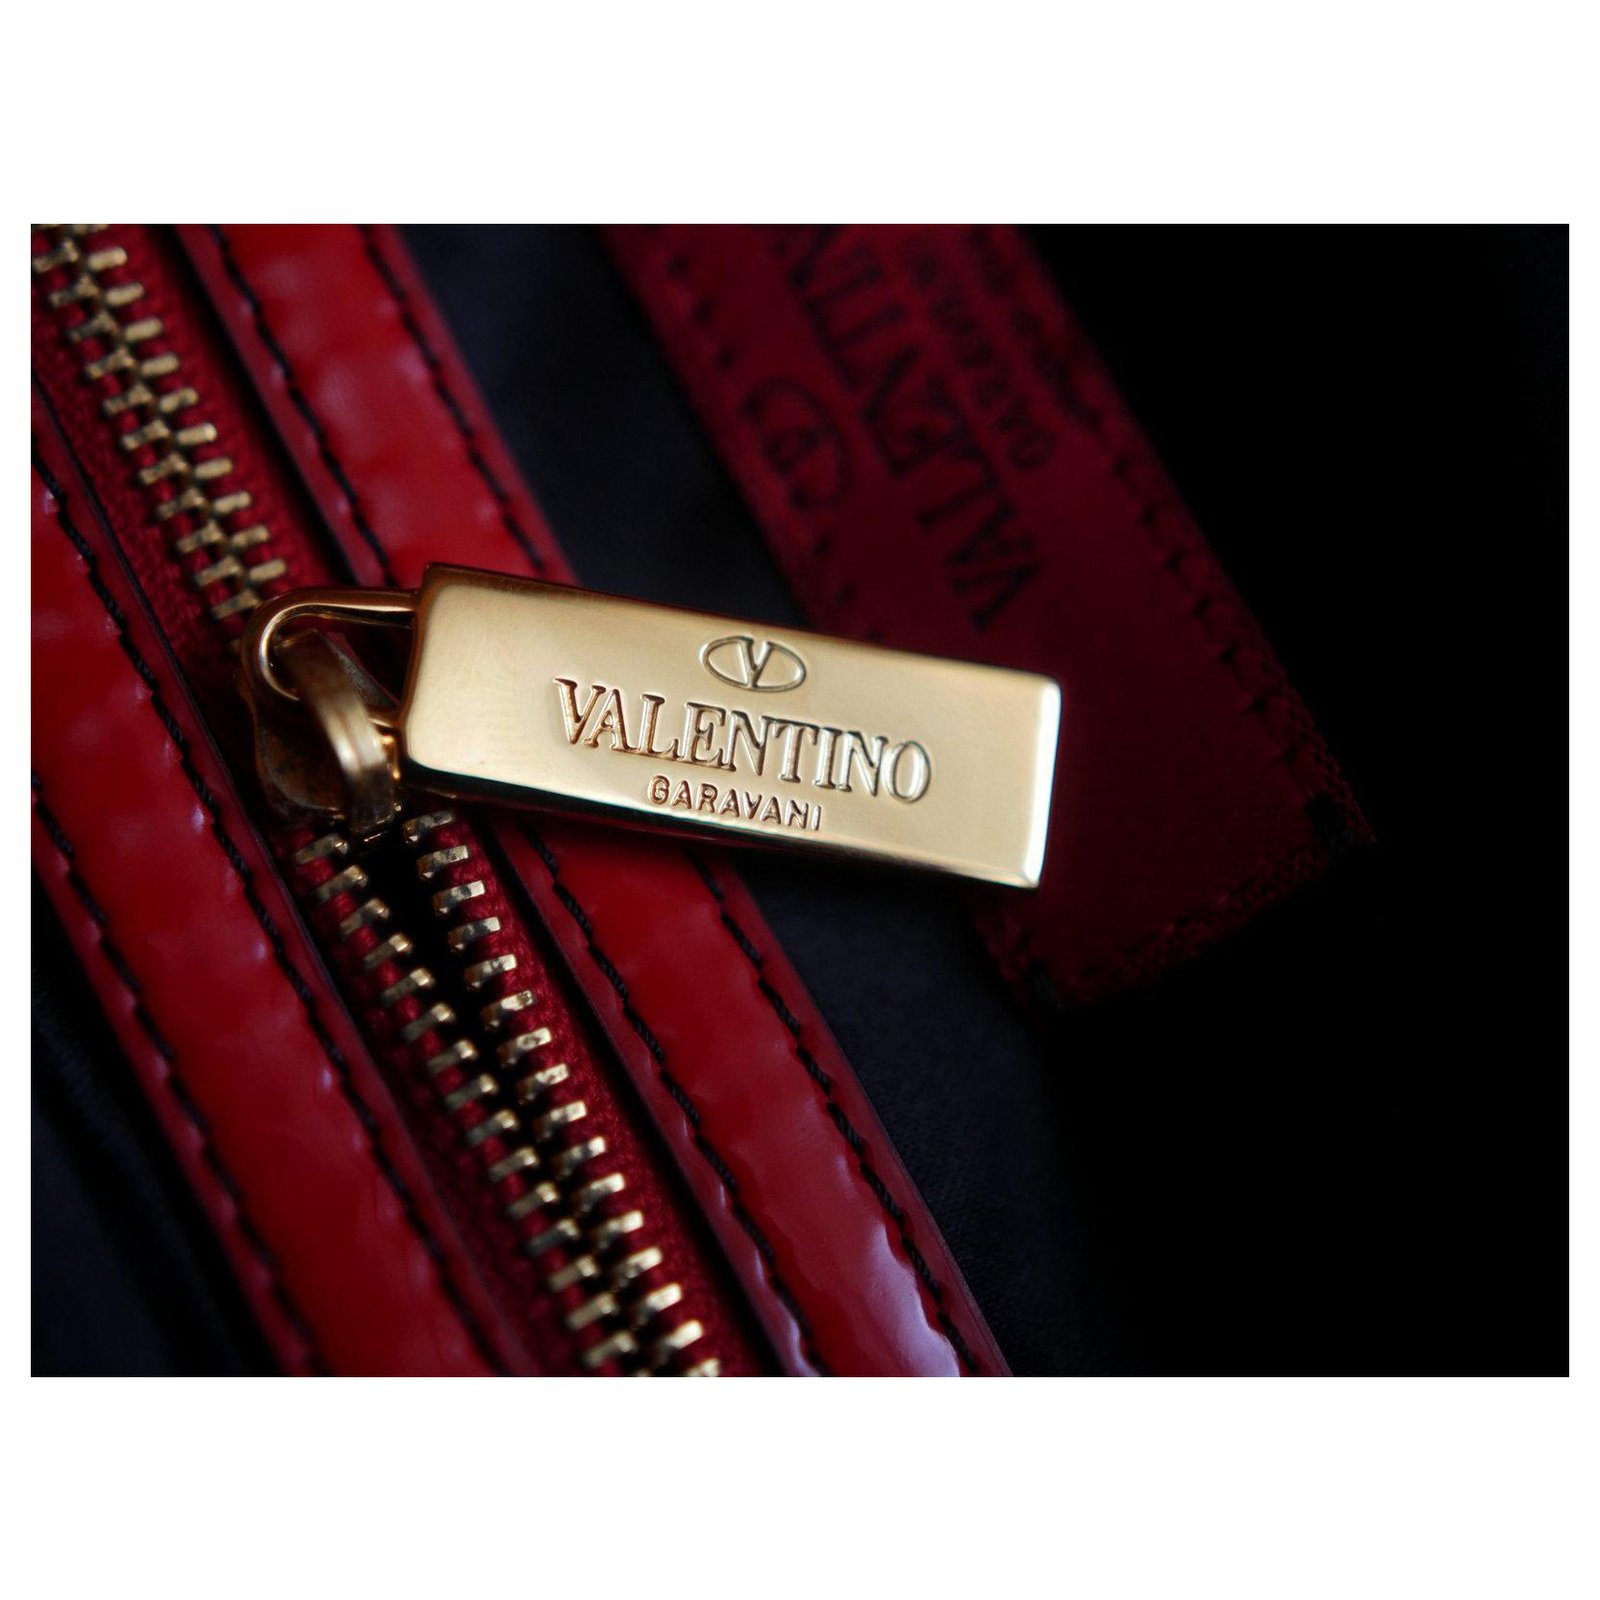 Tote vltn patent leather tote Valentino Garavani Red in Patent